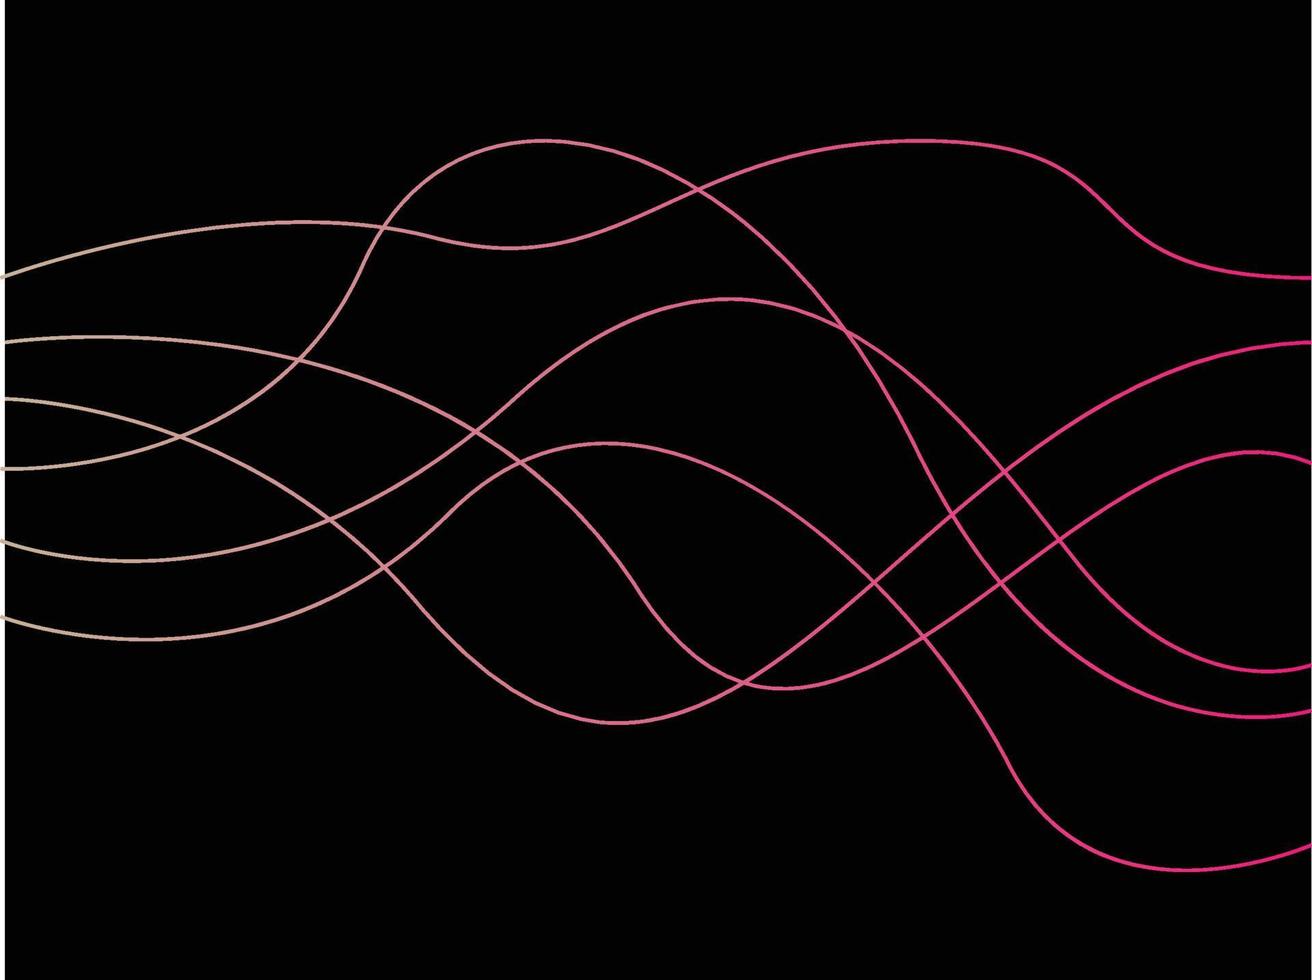 wellig, Wirbel, Hintergrund mit Linien, abstrakt vektor